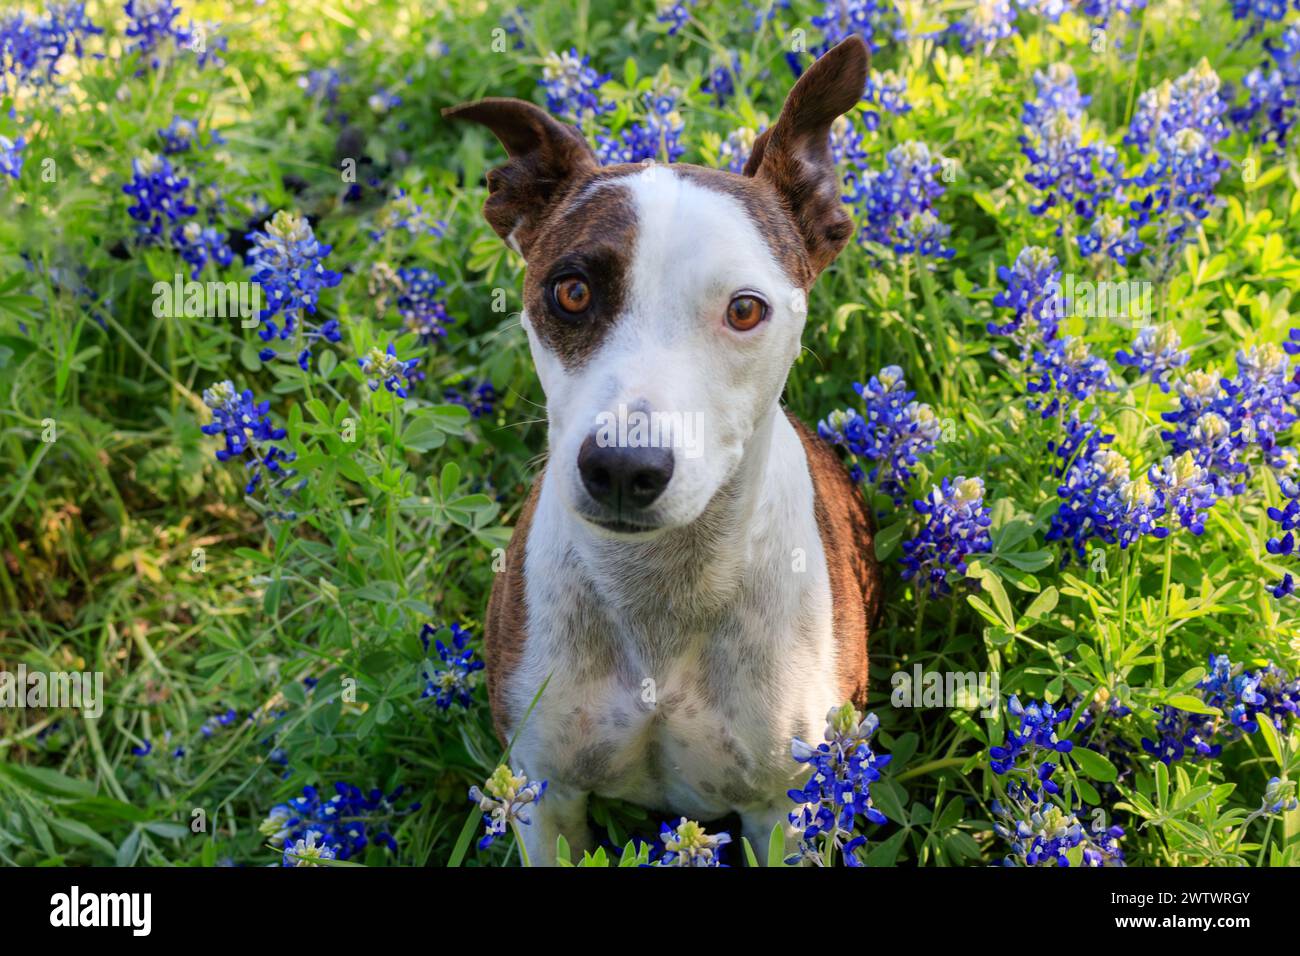 Ein brauner und weißer Hund sitzt inmitten eines Fleckens lebendiger bluebonnet-Blumen. Der Hund hat ein scharfes Ohr und einen konzentrierten Ausdruck. Stockfoto